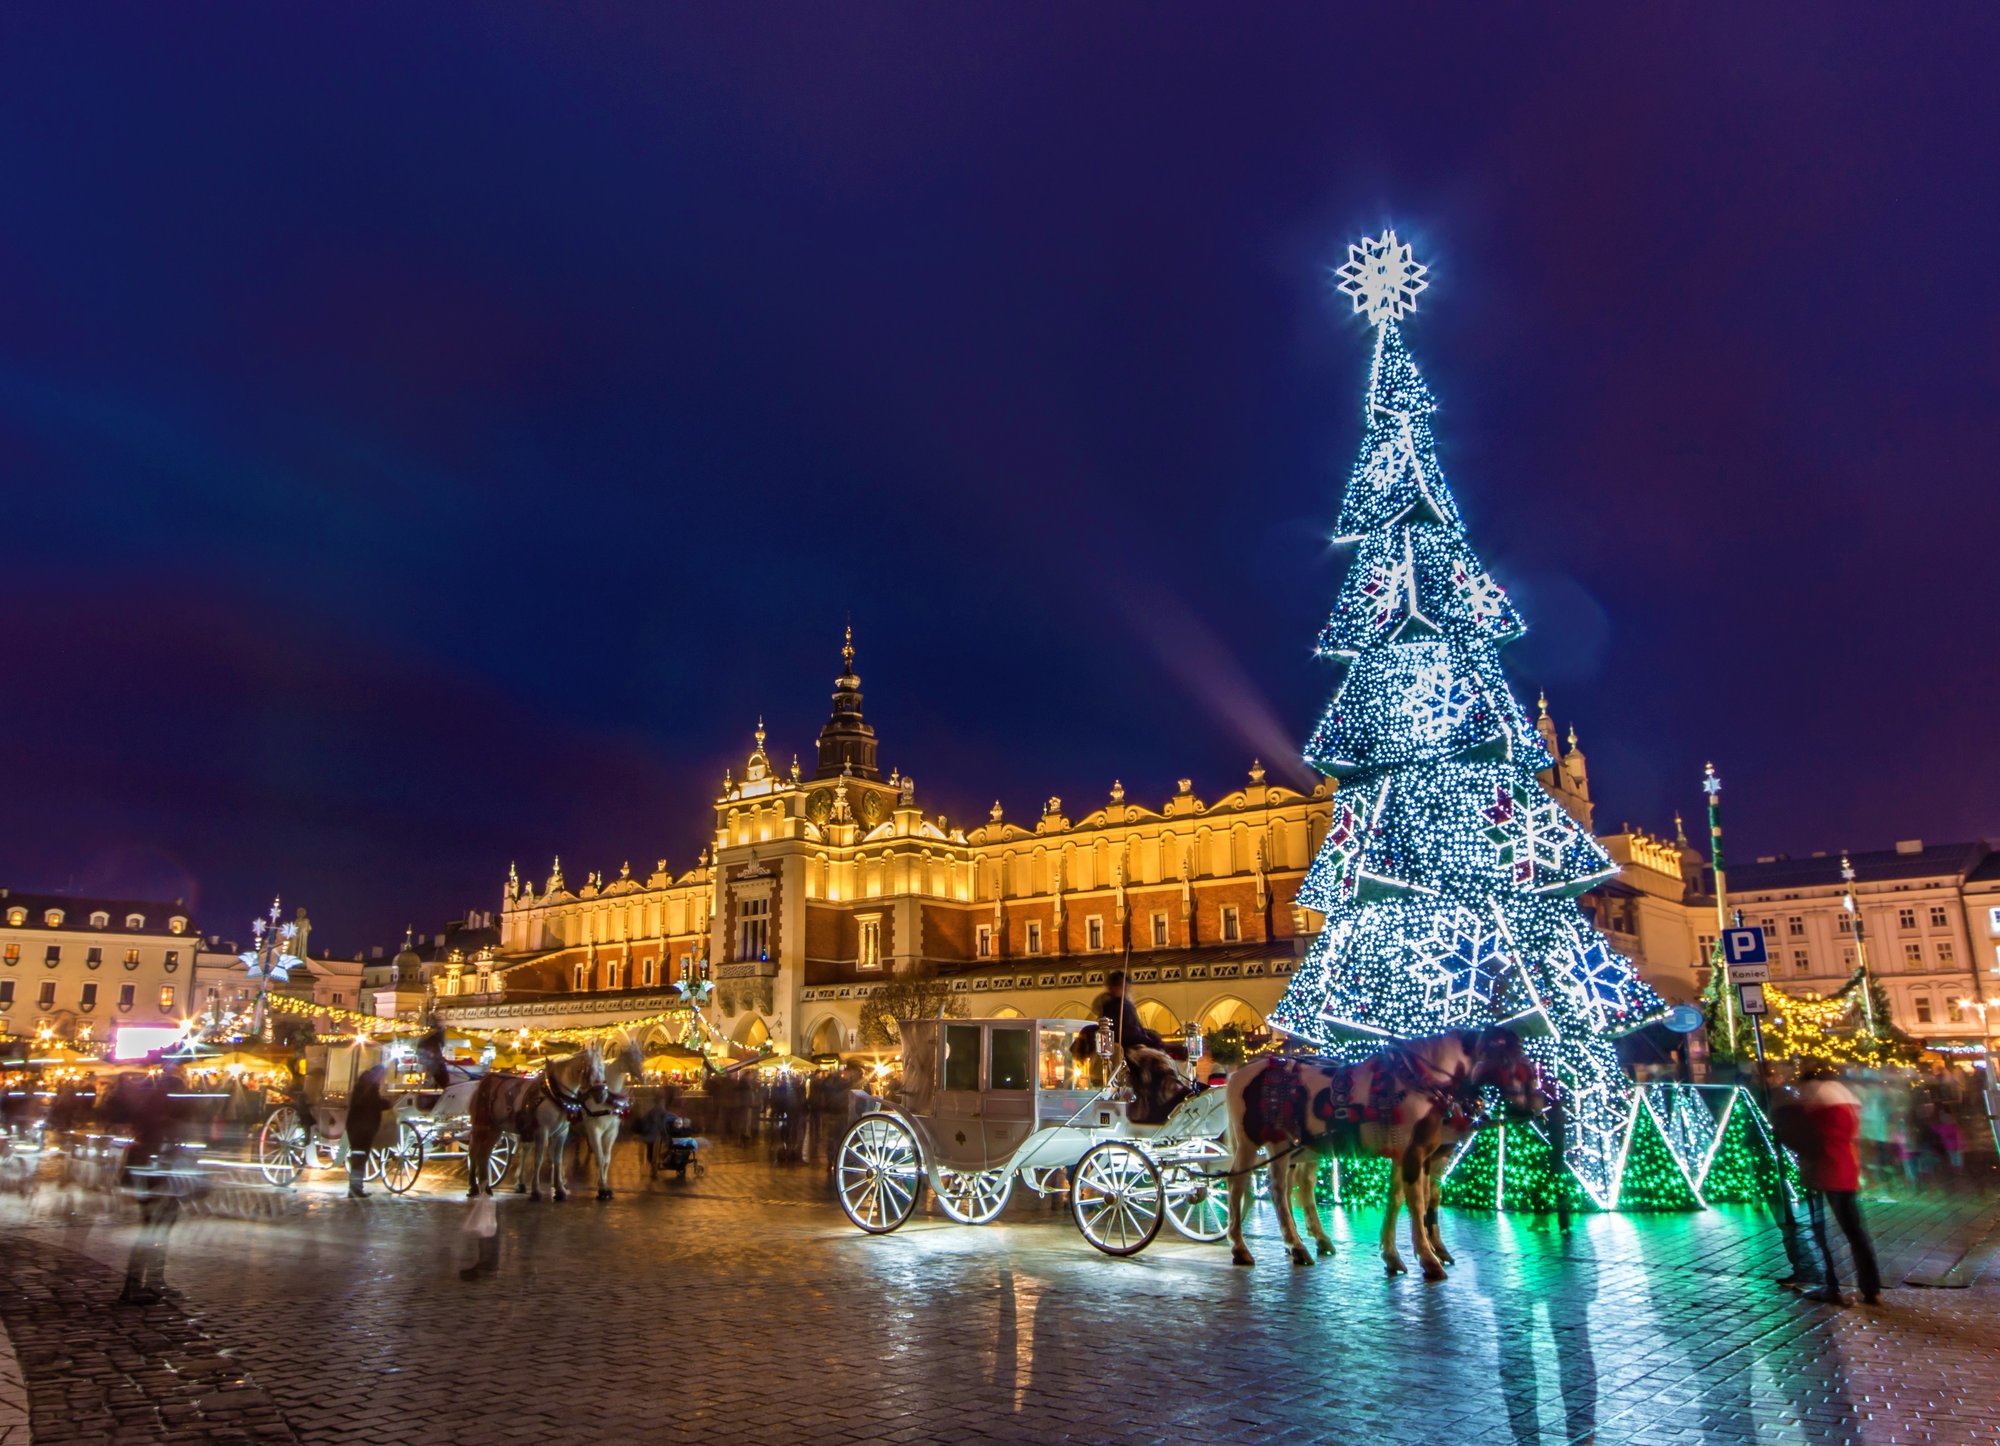 Vianočné trhy Krakow